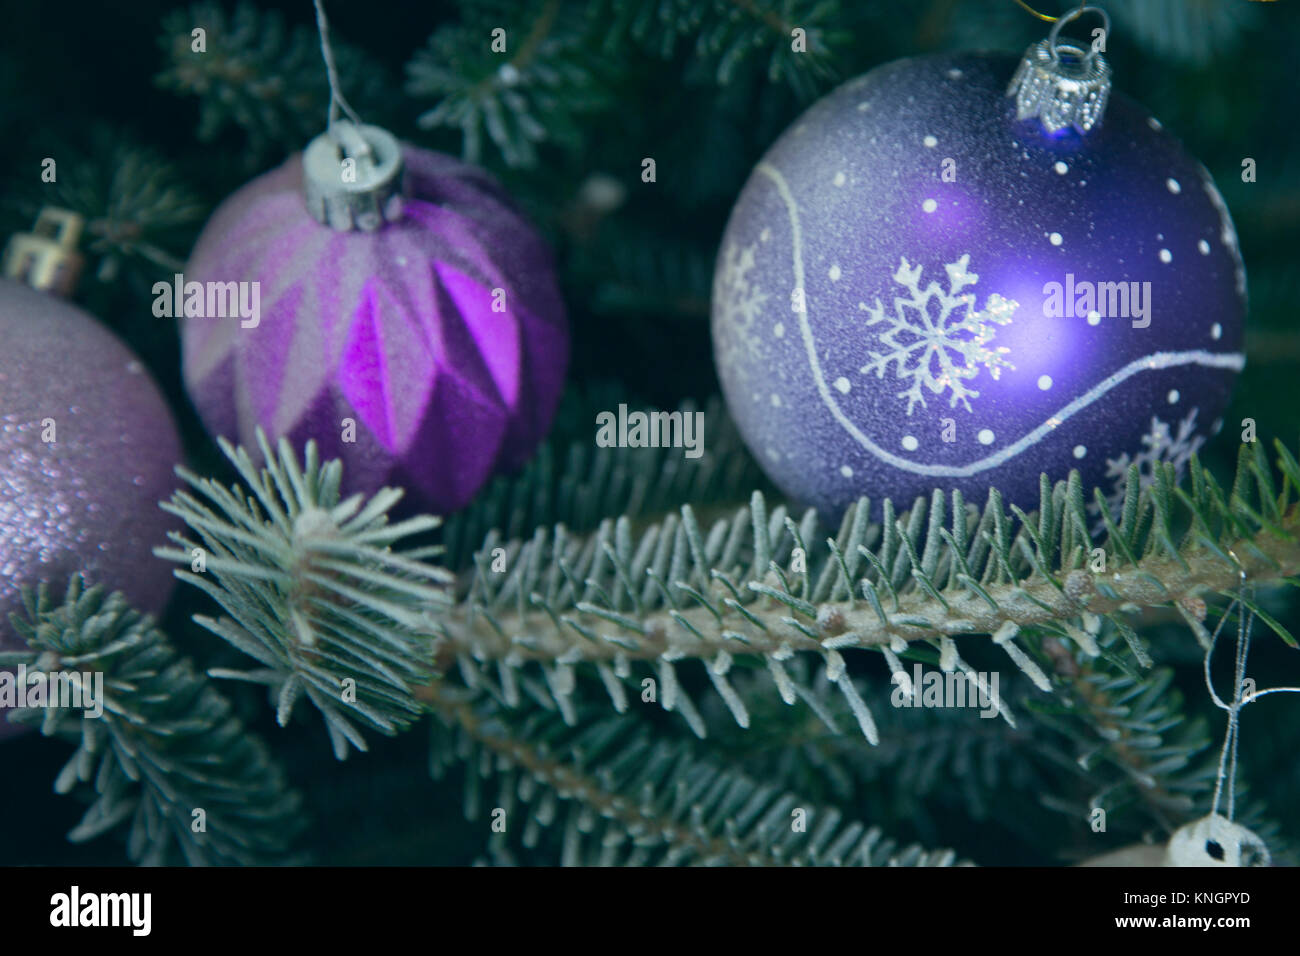 Urlaub Hintergrund mit geschmückten Weihnachtsbaum. Lila und rosa glitter Flitter hängen am Weihnachtsbaum. Einen großen lila Glas bal mit Schneeflocke pa Stockfoto